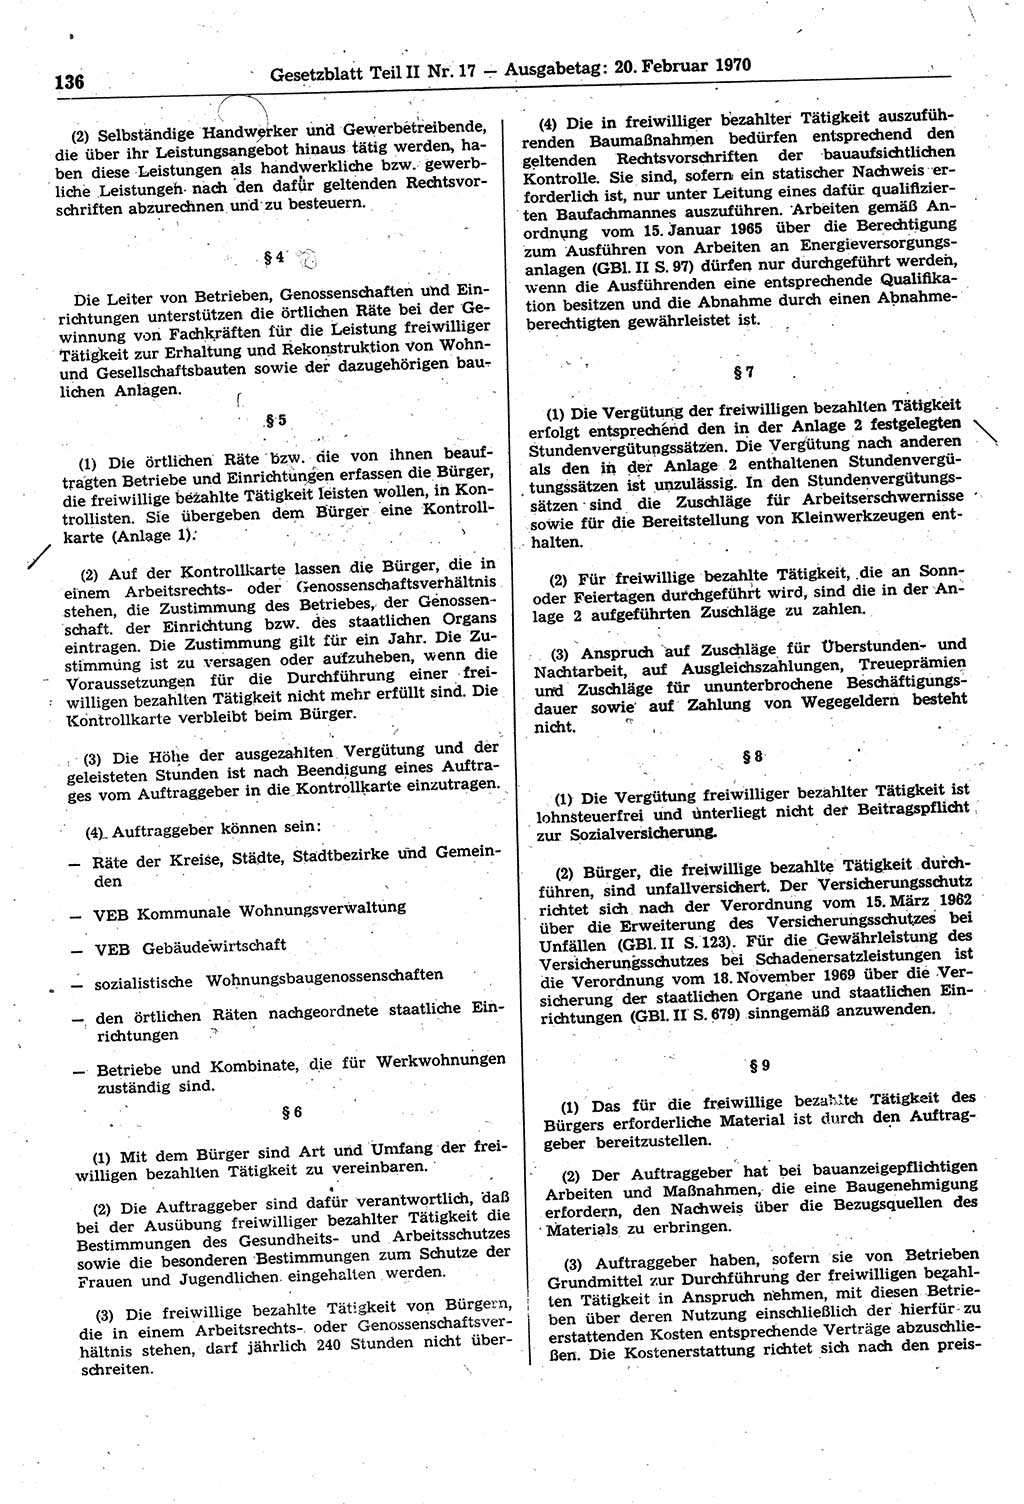 Gesetzblatt (GBl.) der Deutschen Demokratischen Republik (DDR) Teil ⅠⅠ 1970, Seite 136 (GBl. DDR ⅠⅠ 1970, S. 136)